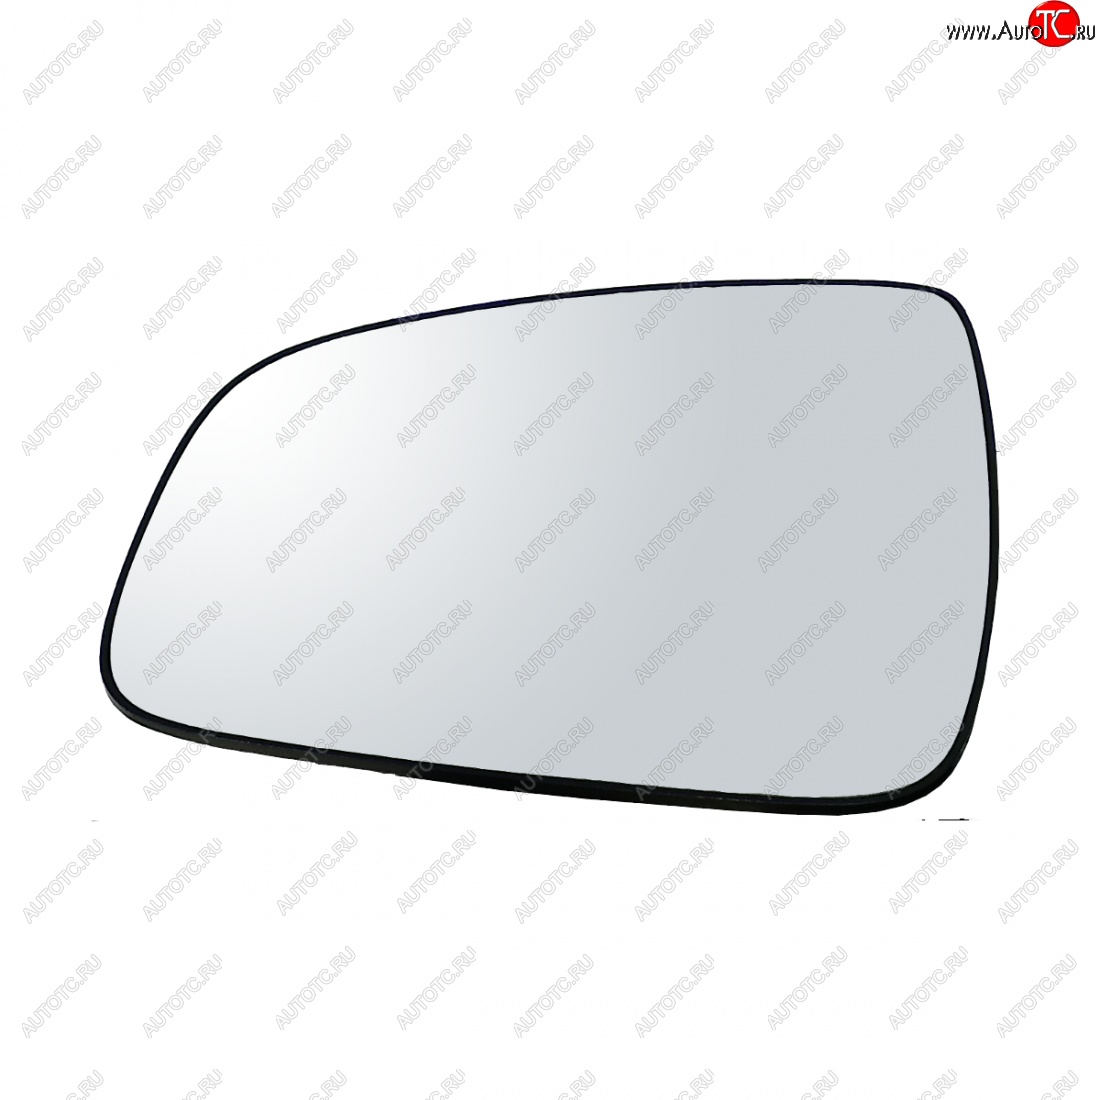 259 р. Левый зеркальный элемент AutoBlik2 Nissan Terrano D10 дорестайлинг (2013-2016) (без антибликового покрытия)